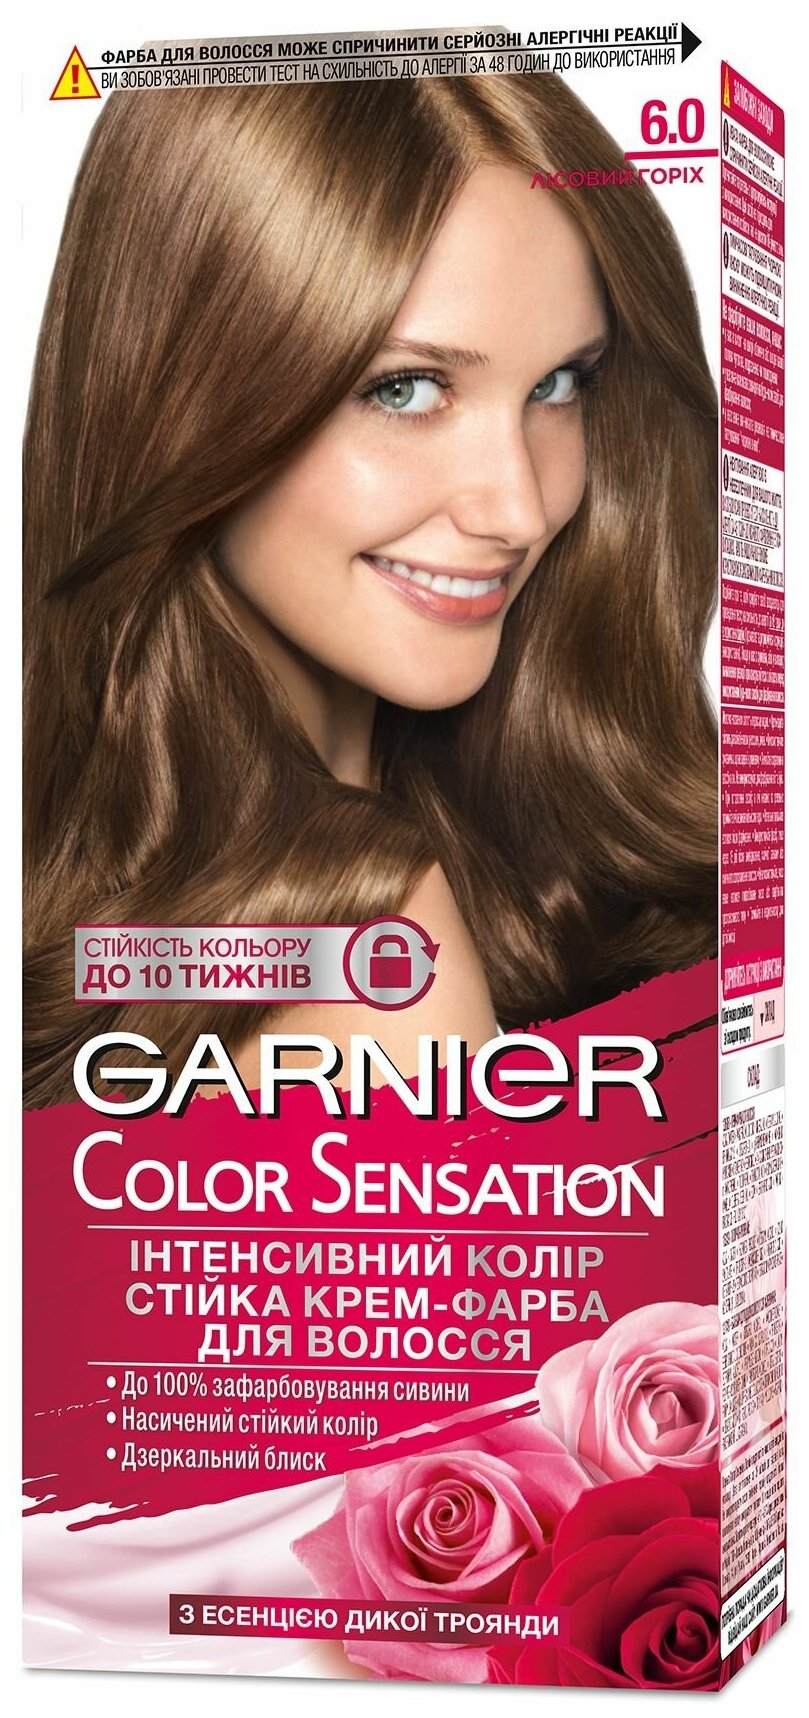 Краска для волос Garnier Color Sensation Роскошный цвет, тон 6.0, роскошный тёмно-русый Garnier 17